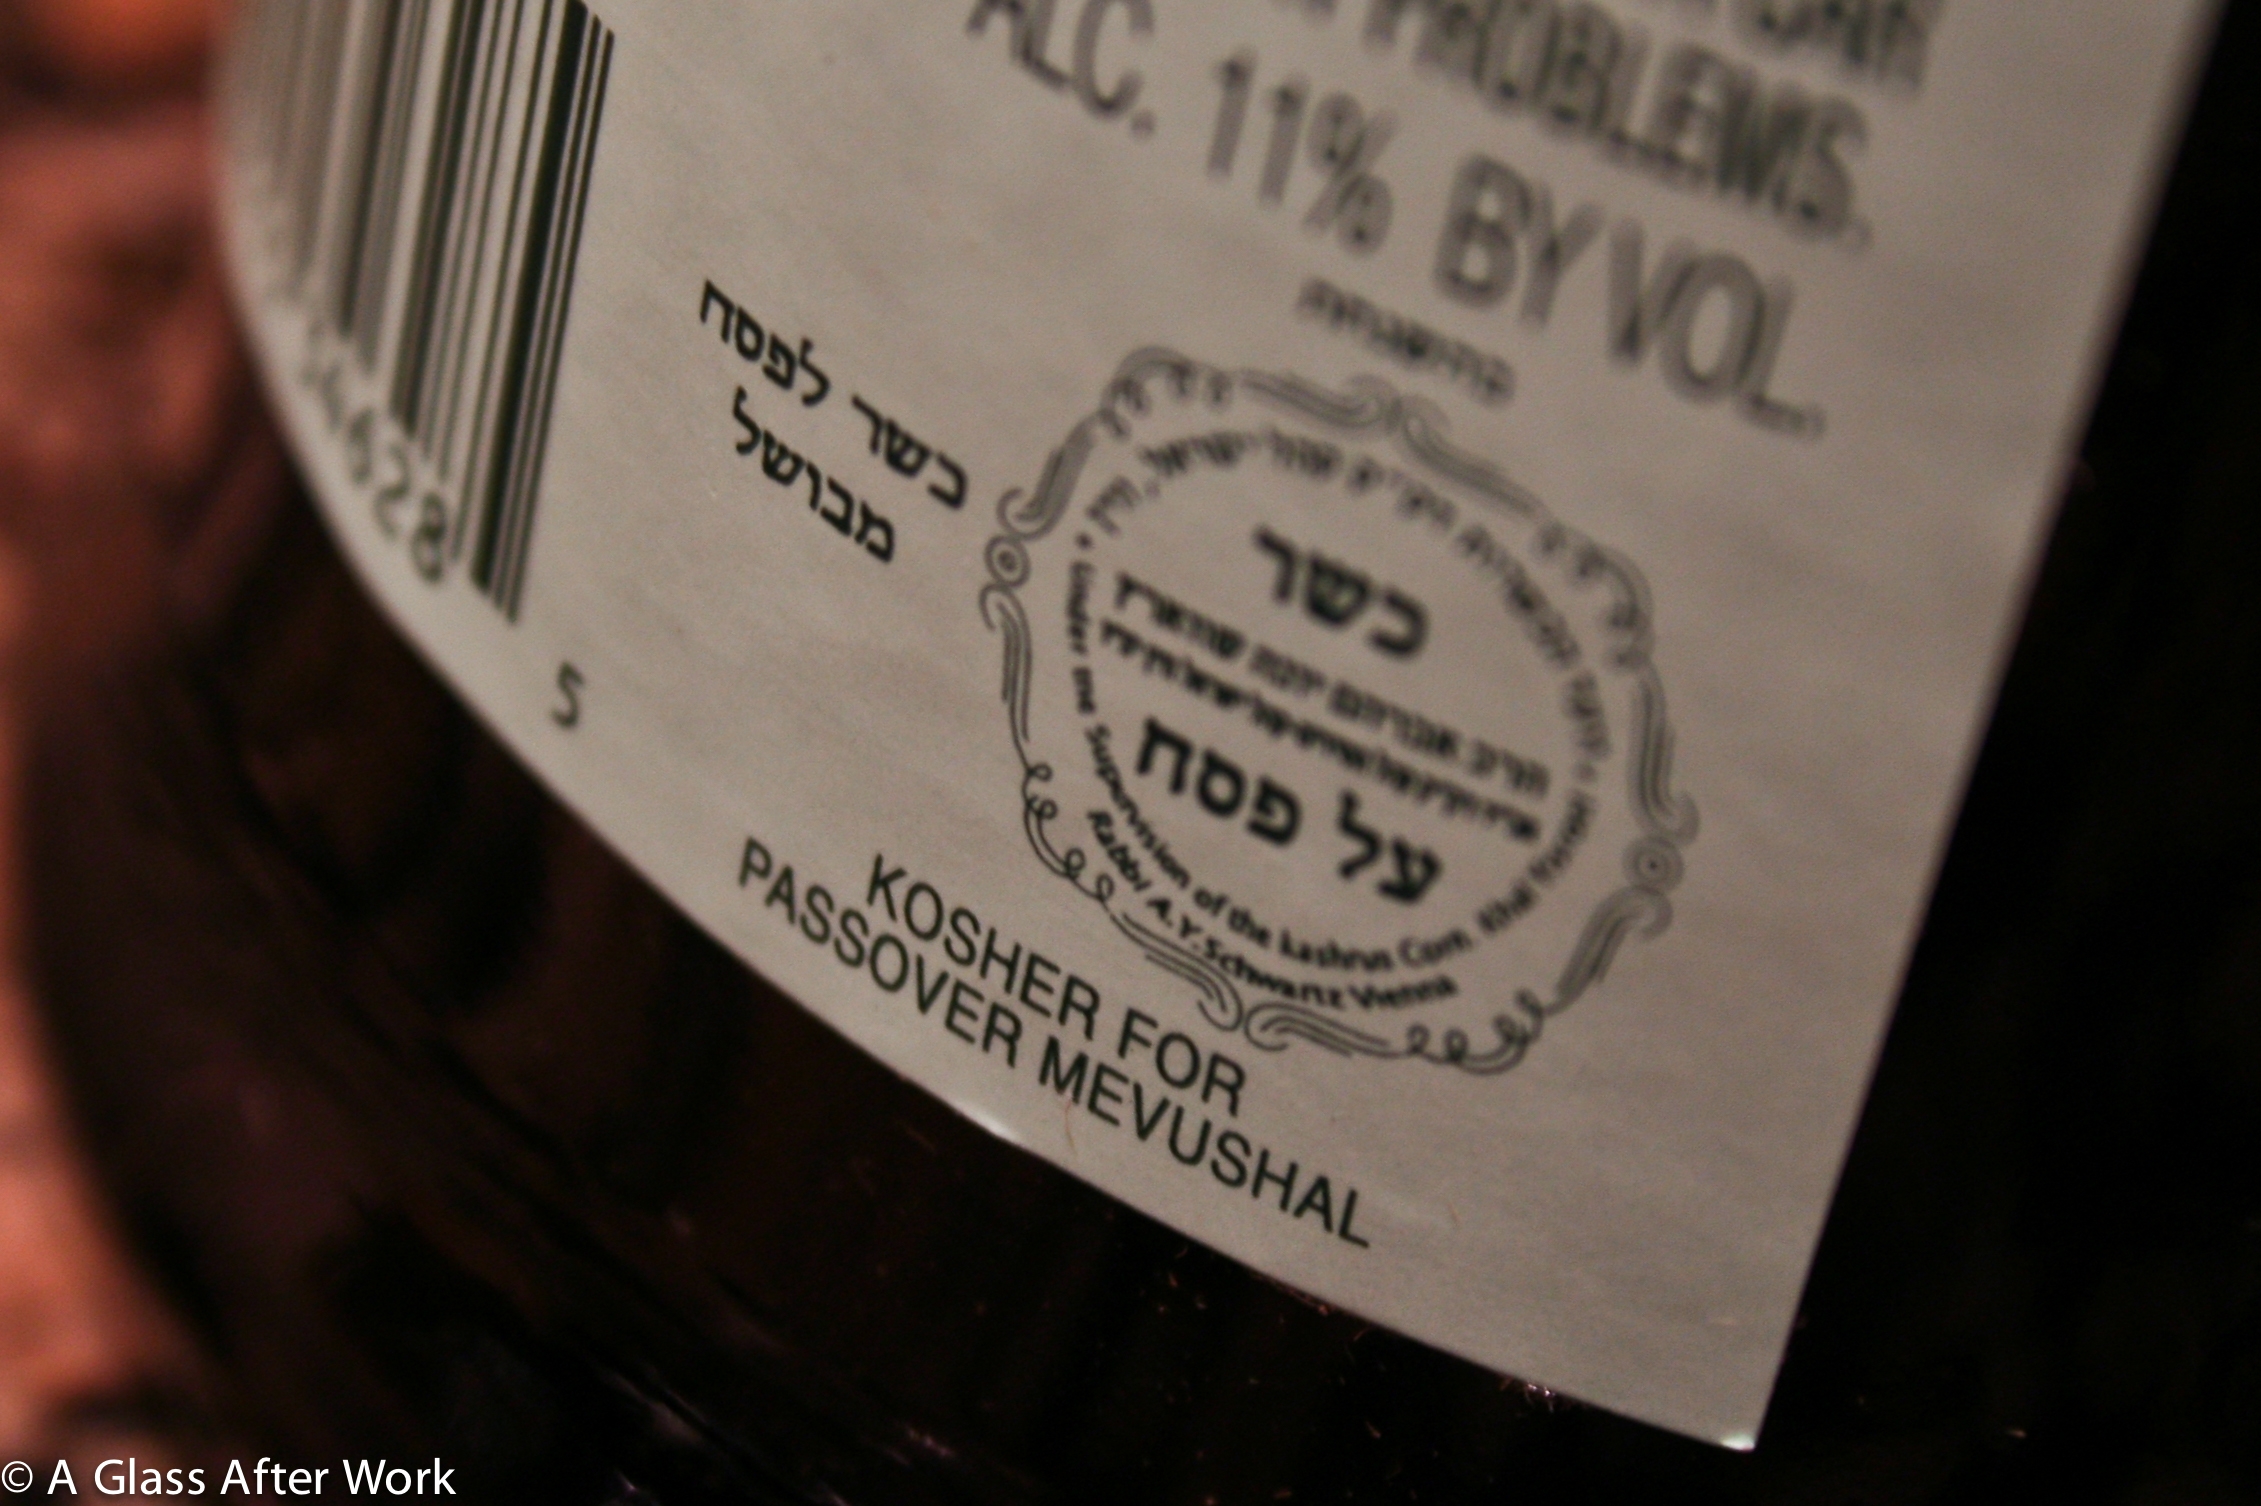 Mevushal Kosher wine back label